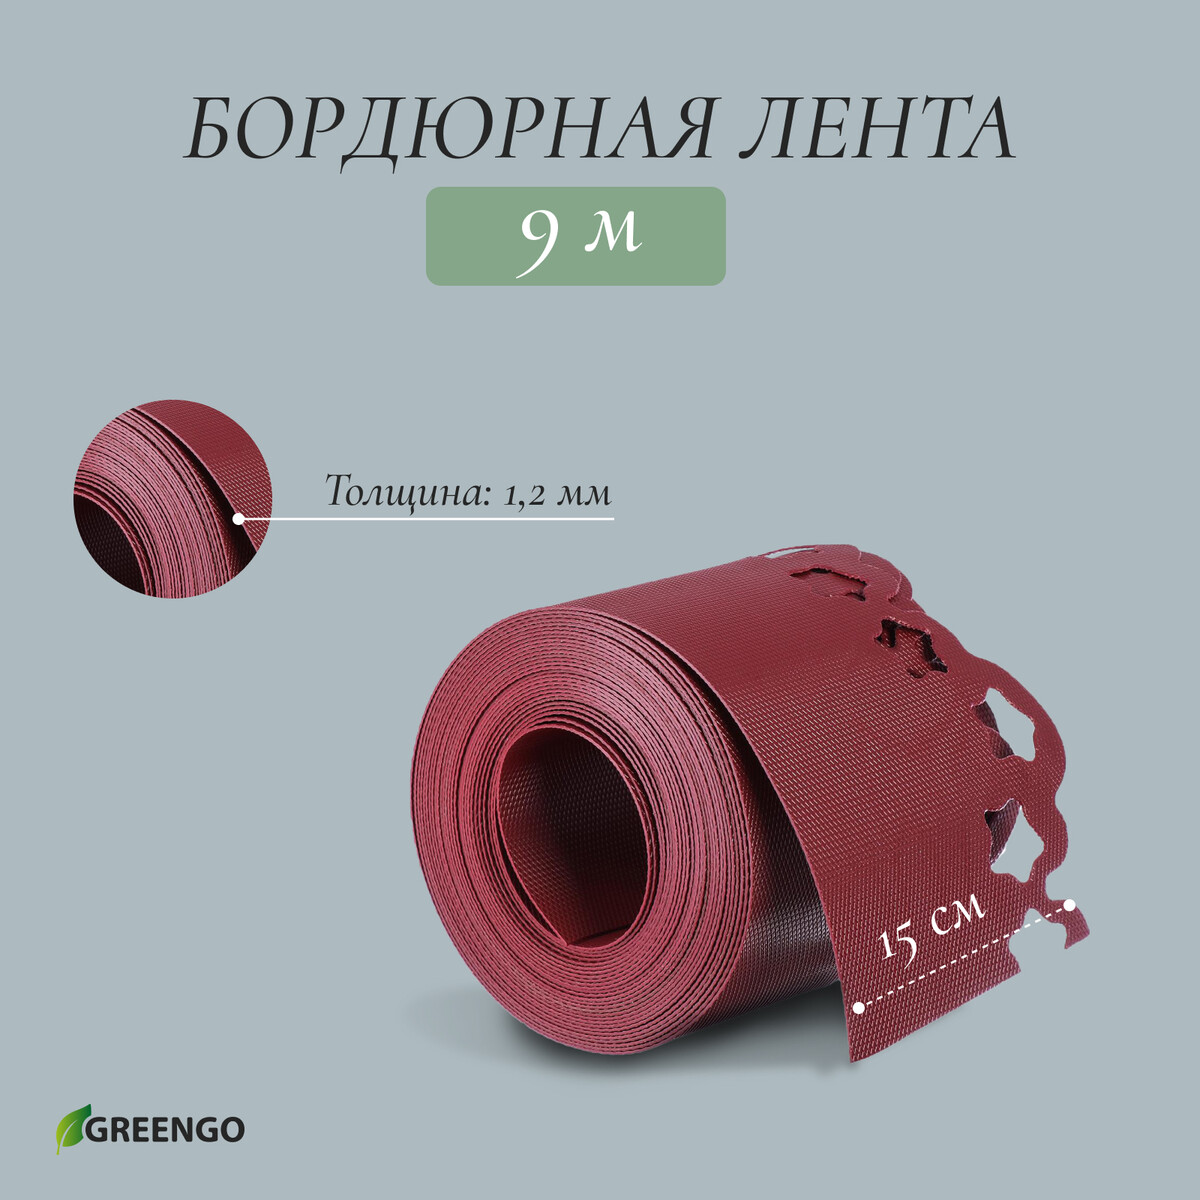 Лента бордюрная, 0.15 × 9 м, толщина 1.2 мм, пластиковая, фигурная, красная Greengo